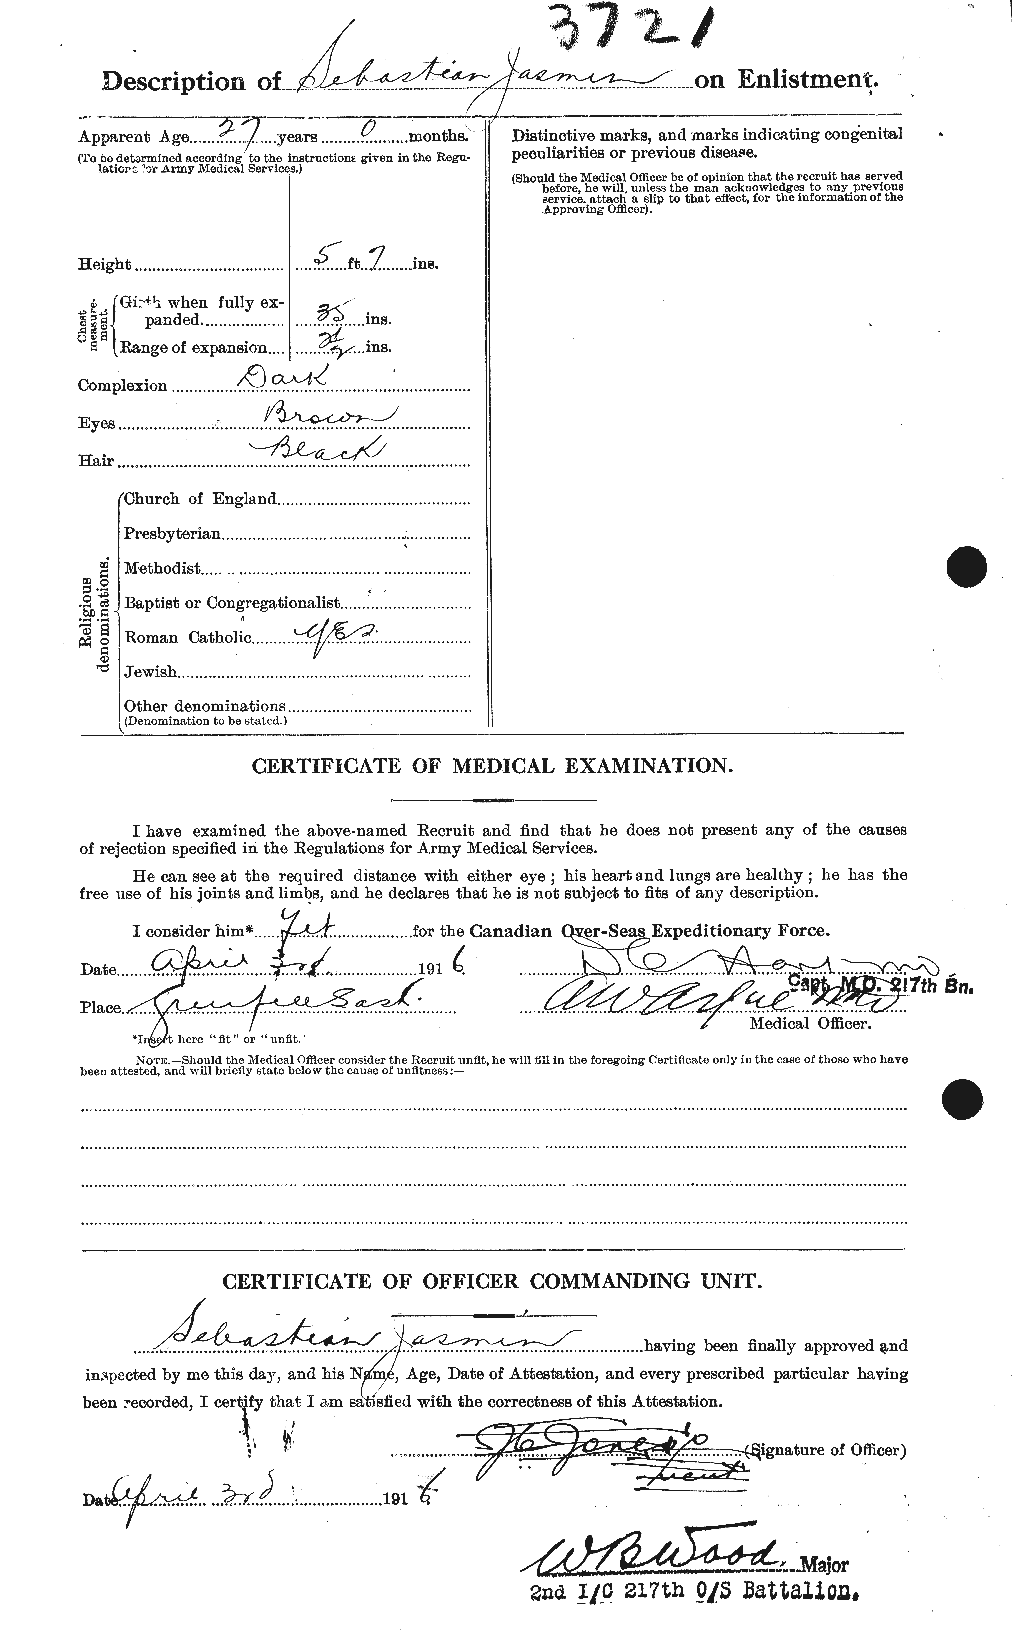 Dossiers du Personnel de la Première Guerre mondiale - CEC 415928b